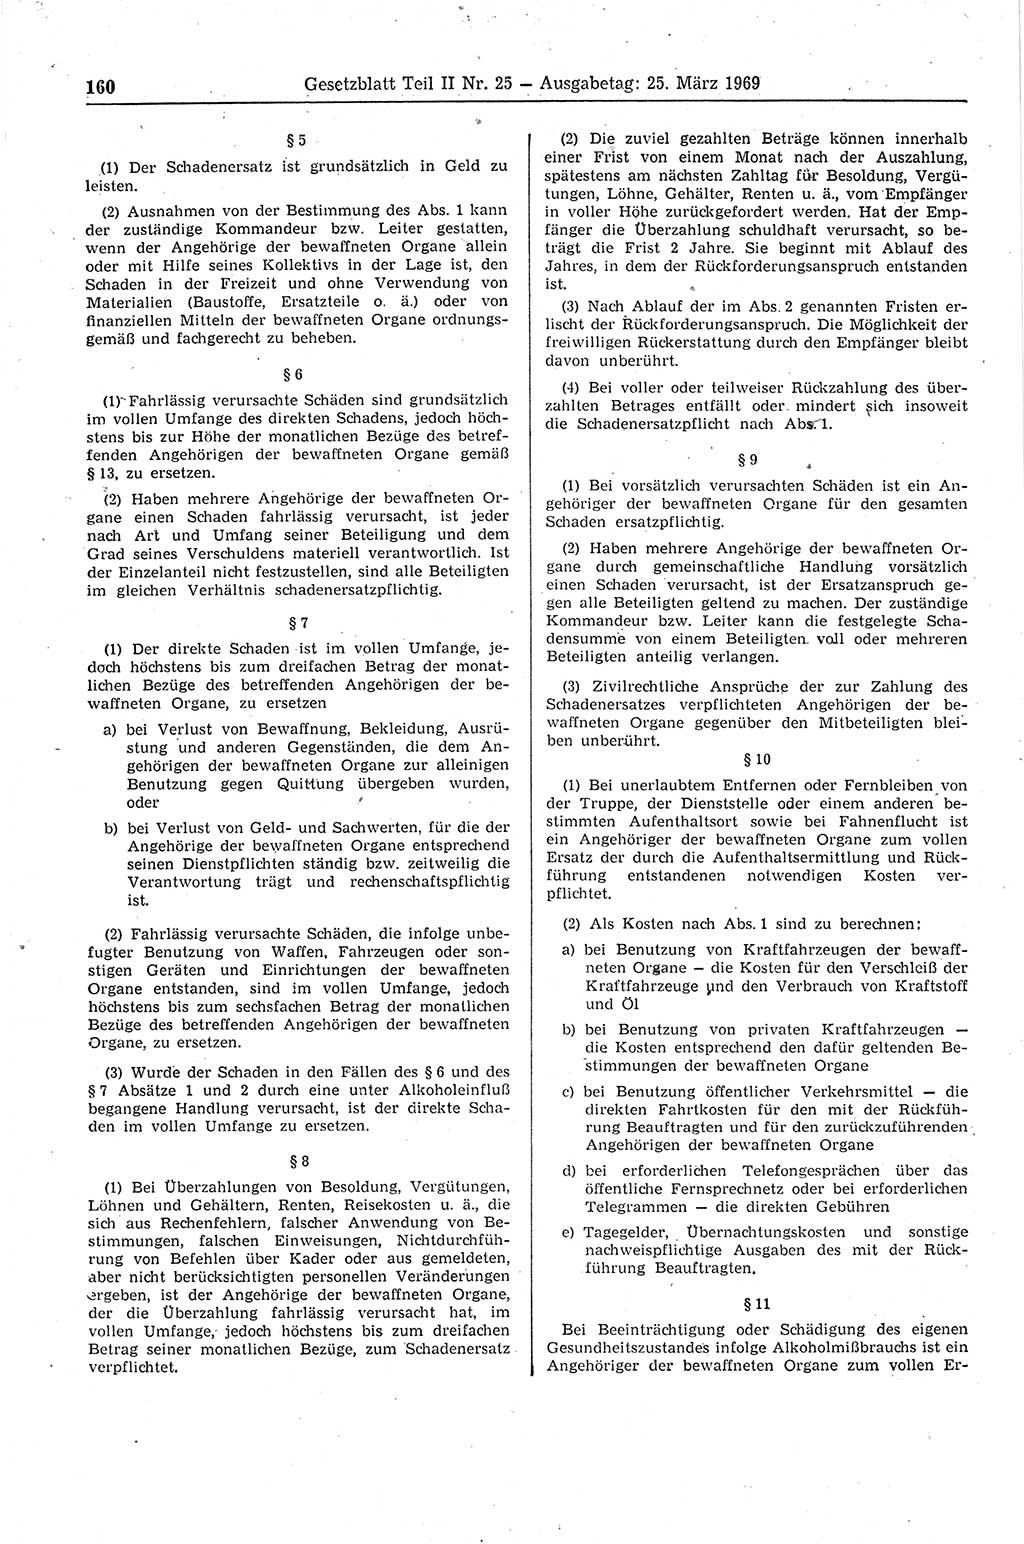 Gesetzblatt (GBl.) der Deutschen Demokratischen Republik (DDR) Teil ⅠⅠ 1969, Seite 160 (GBl. DDR ⅠⅠ 1969, S. 160)